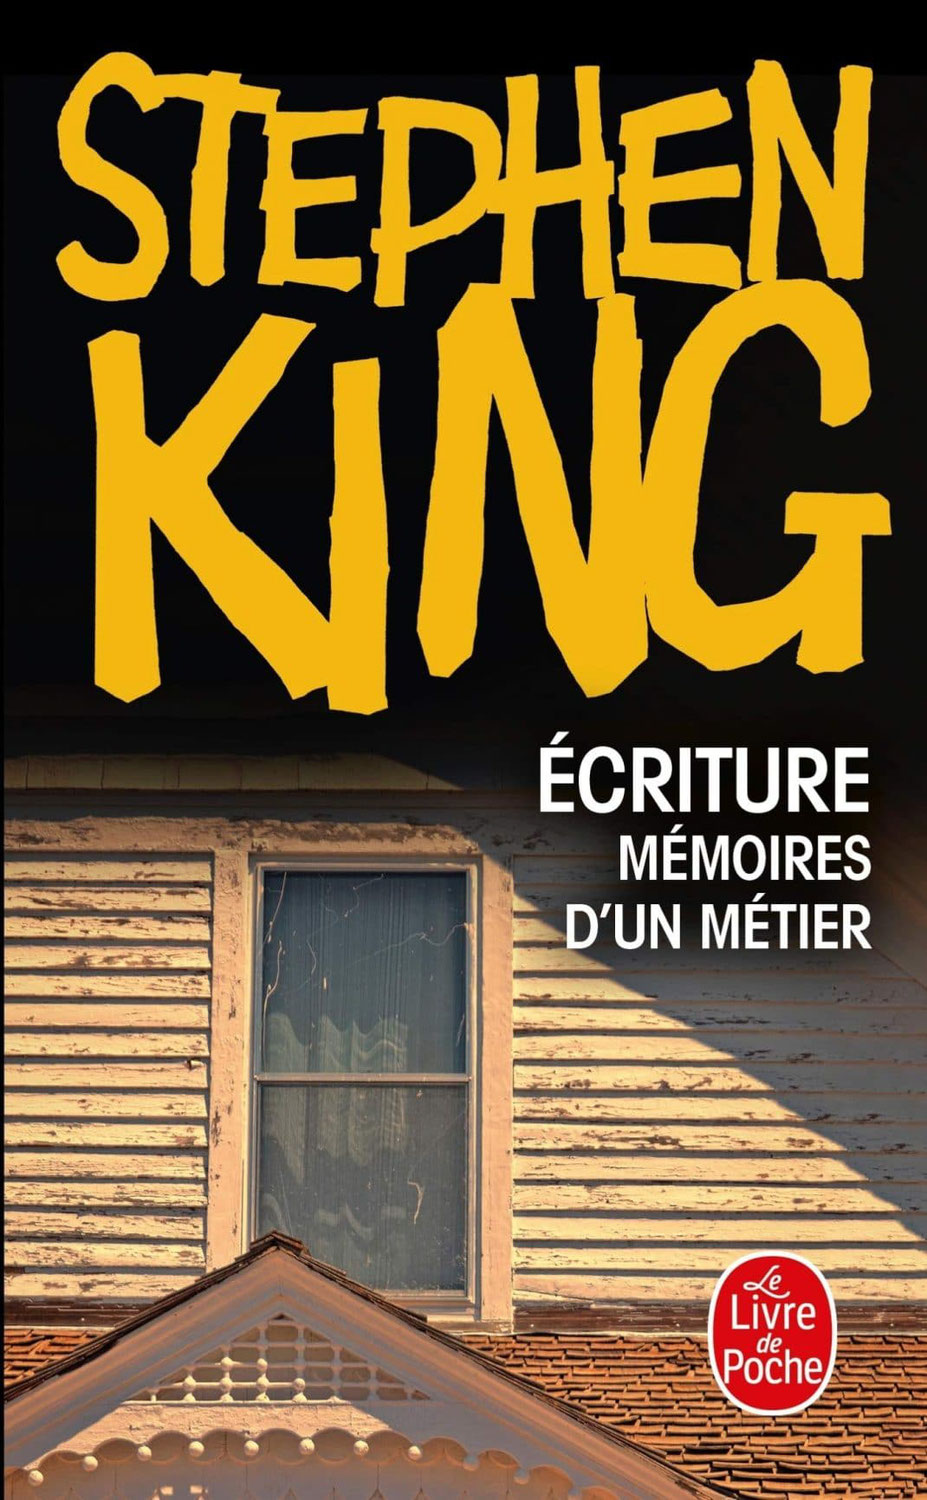 3 choses apprises en lisant "Ecriture" de Stephen King